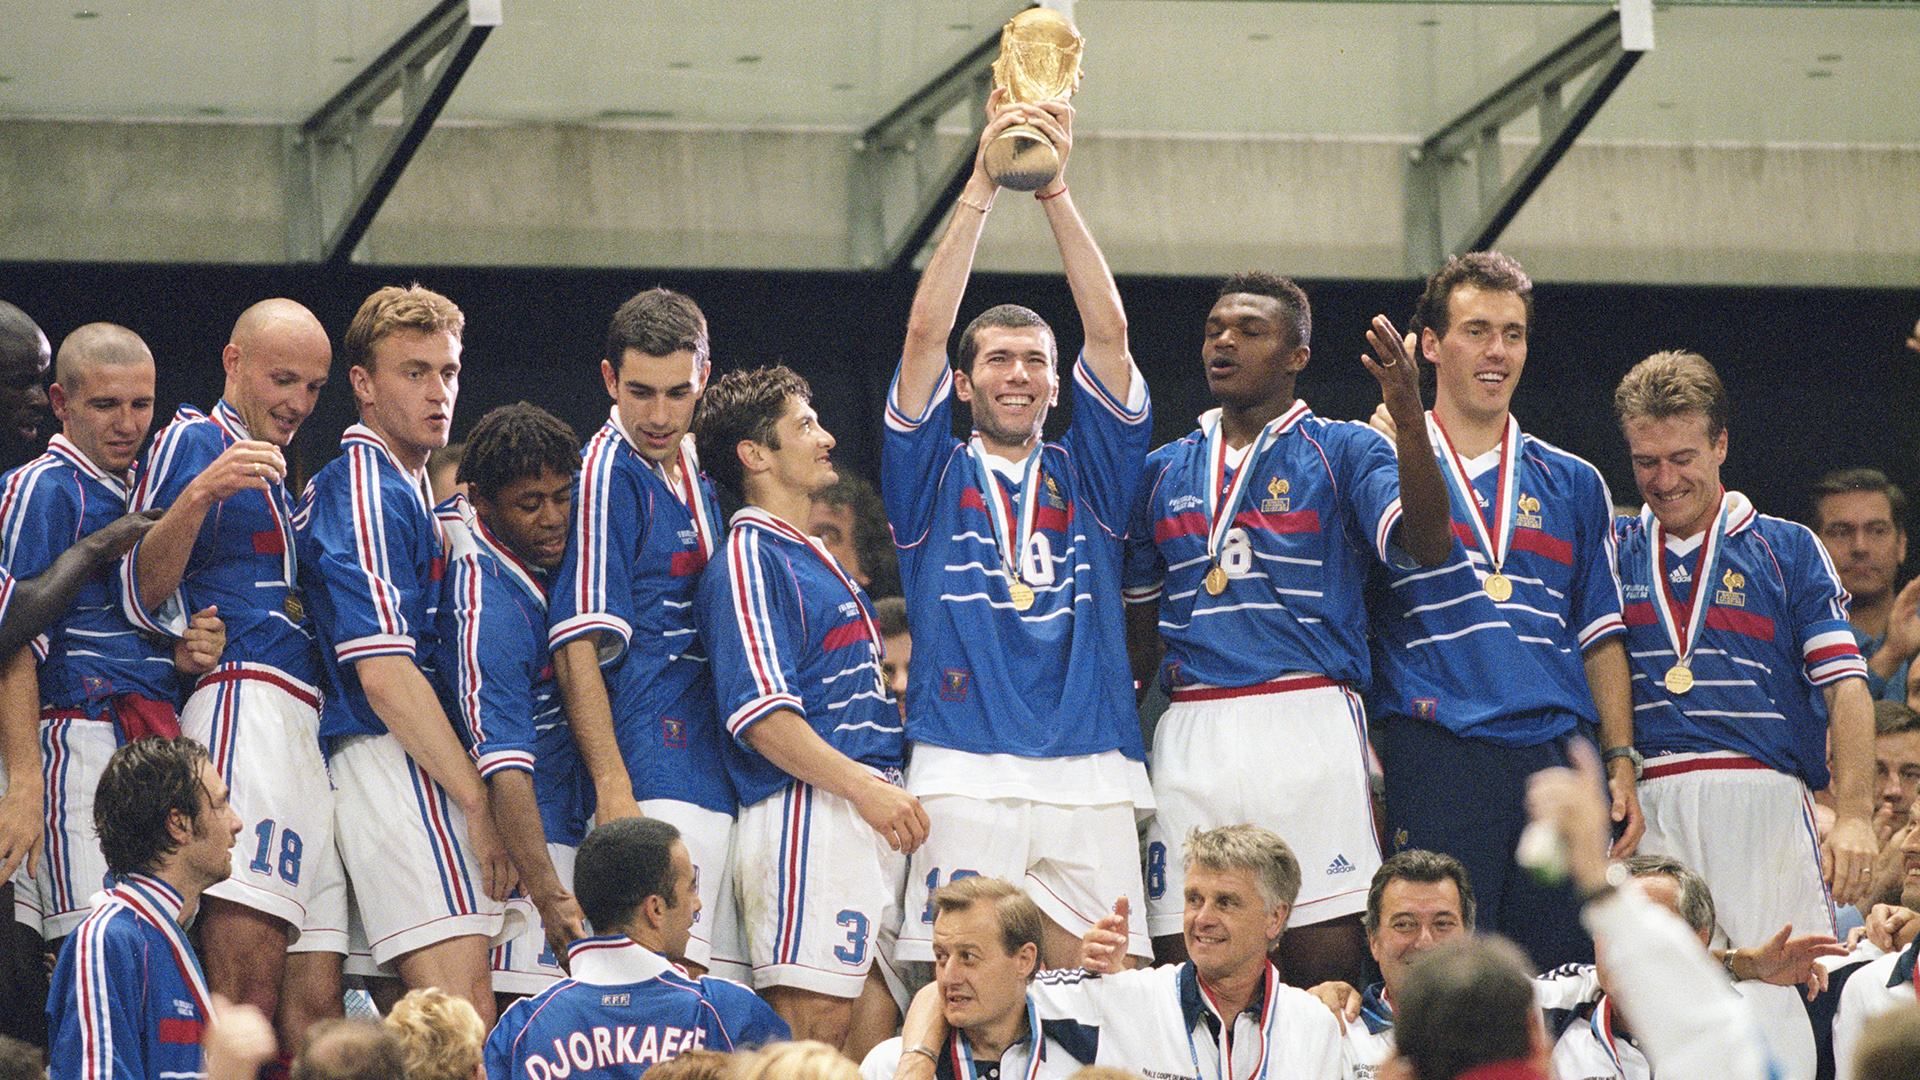 Франция ровно 20 лет назад выиграла свой первый чемпионат мира по футболу